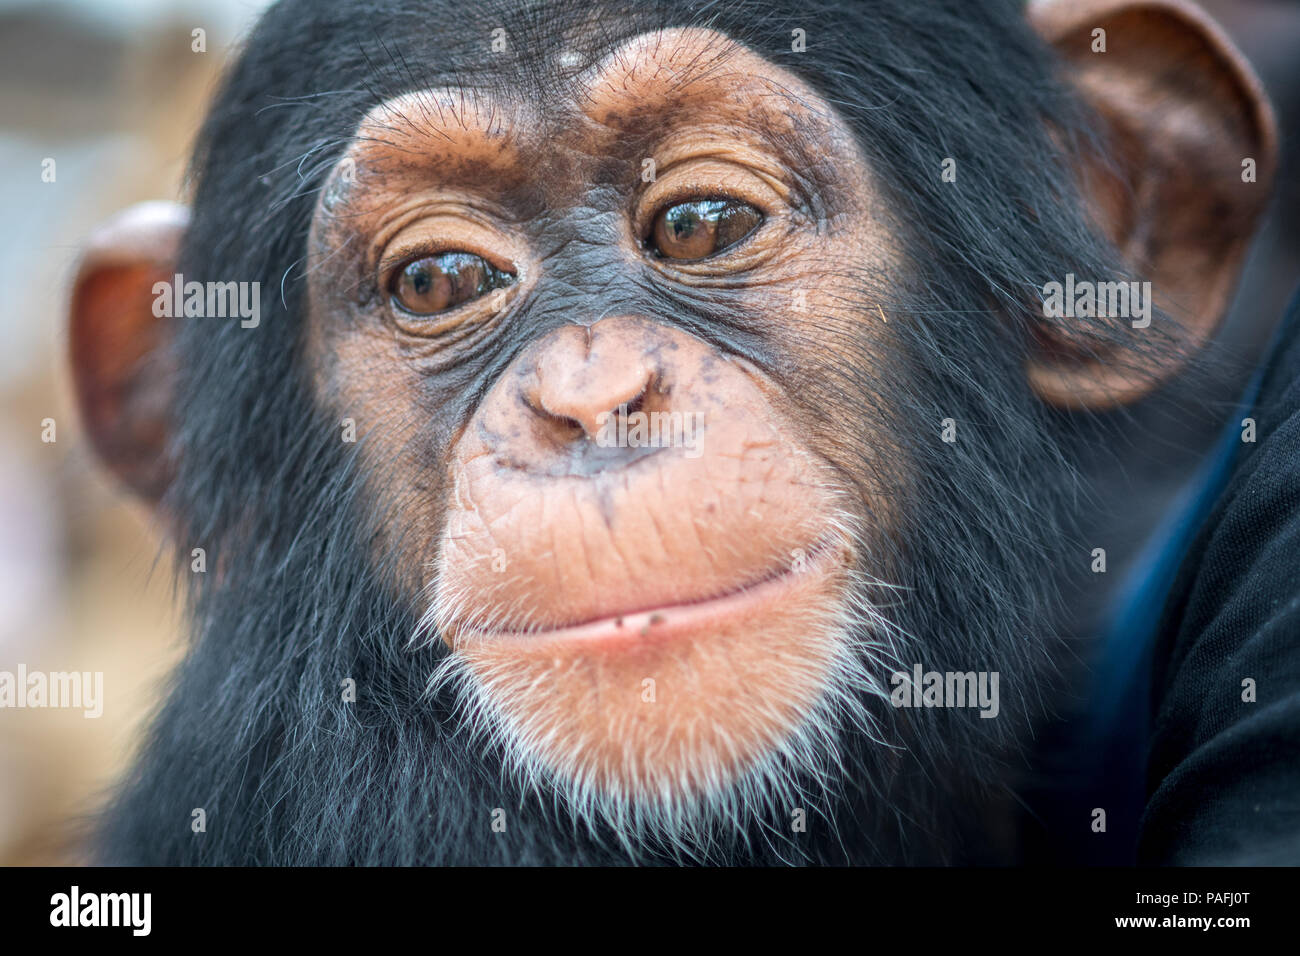 A close up look at the face of a baby chimpanzee.(Pan troglodytes) Ganta Liberia Stock Photo